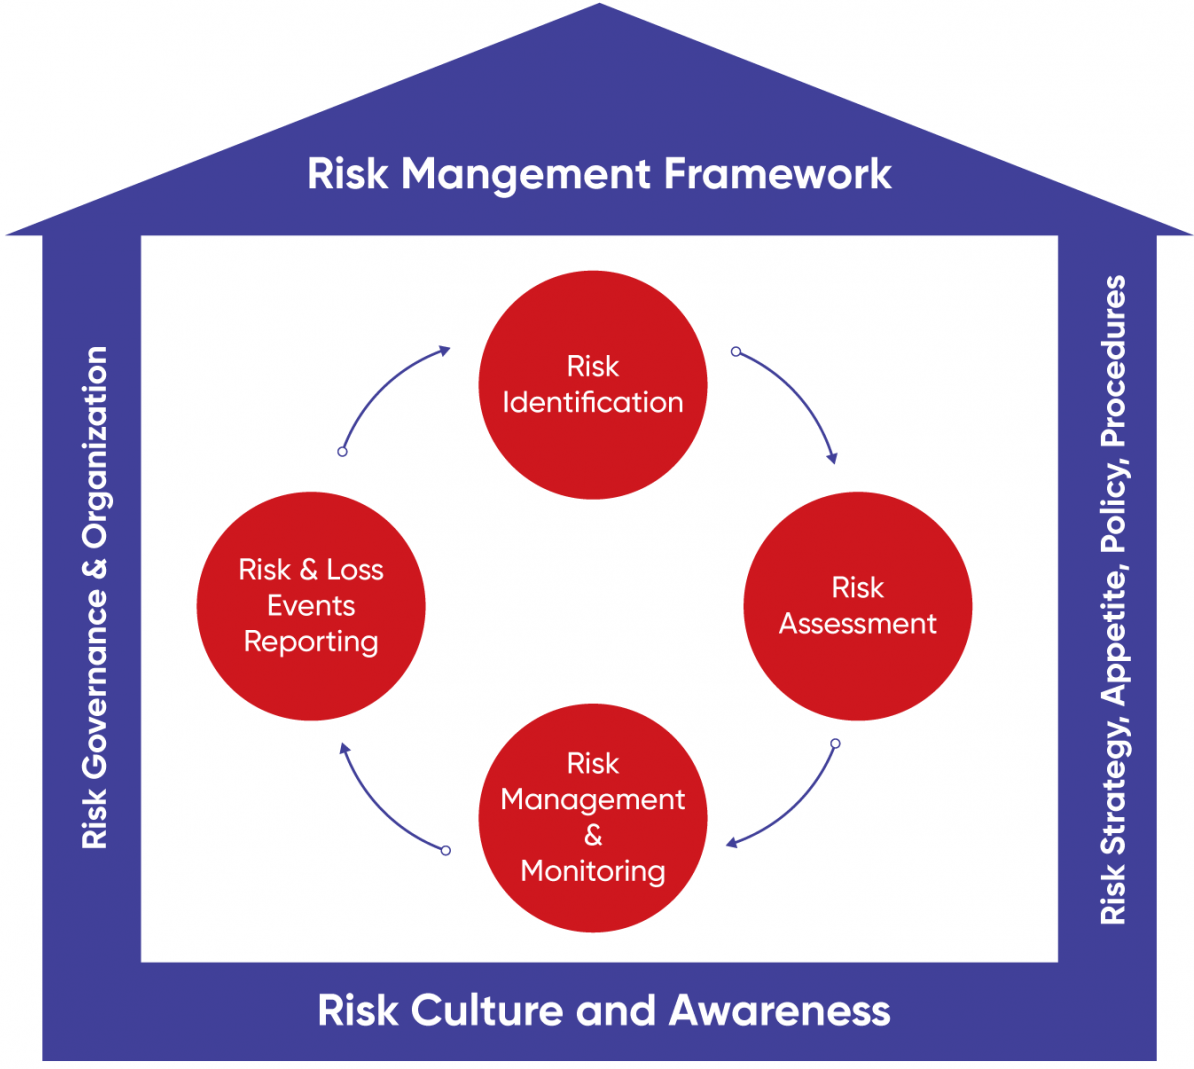 thesis risk management framework